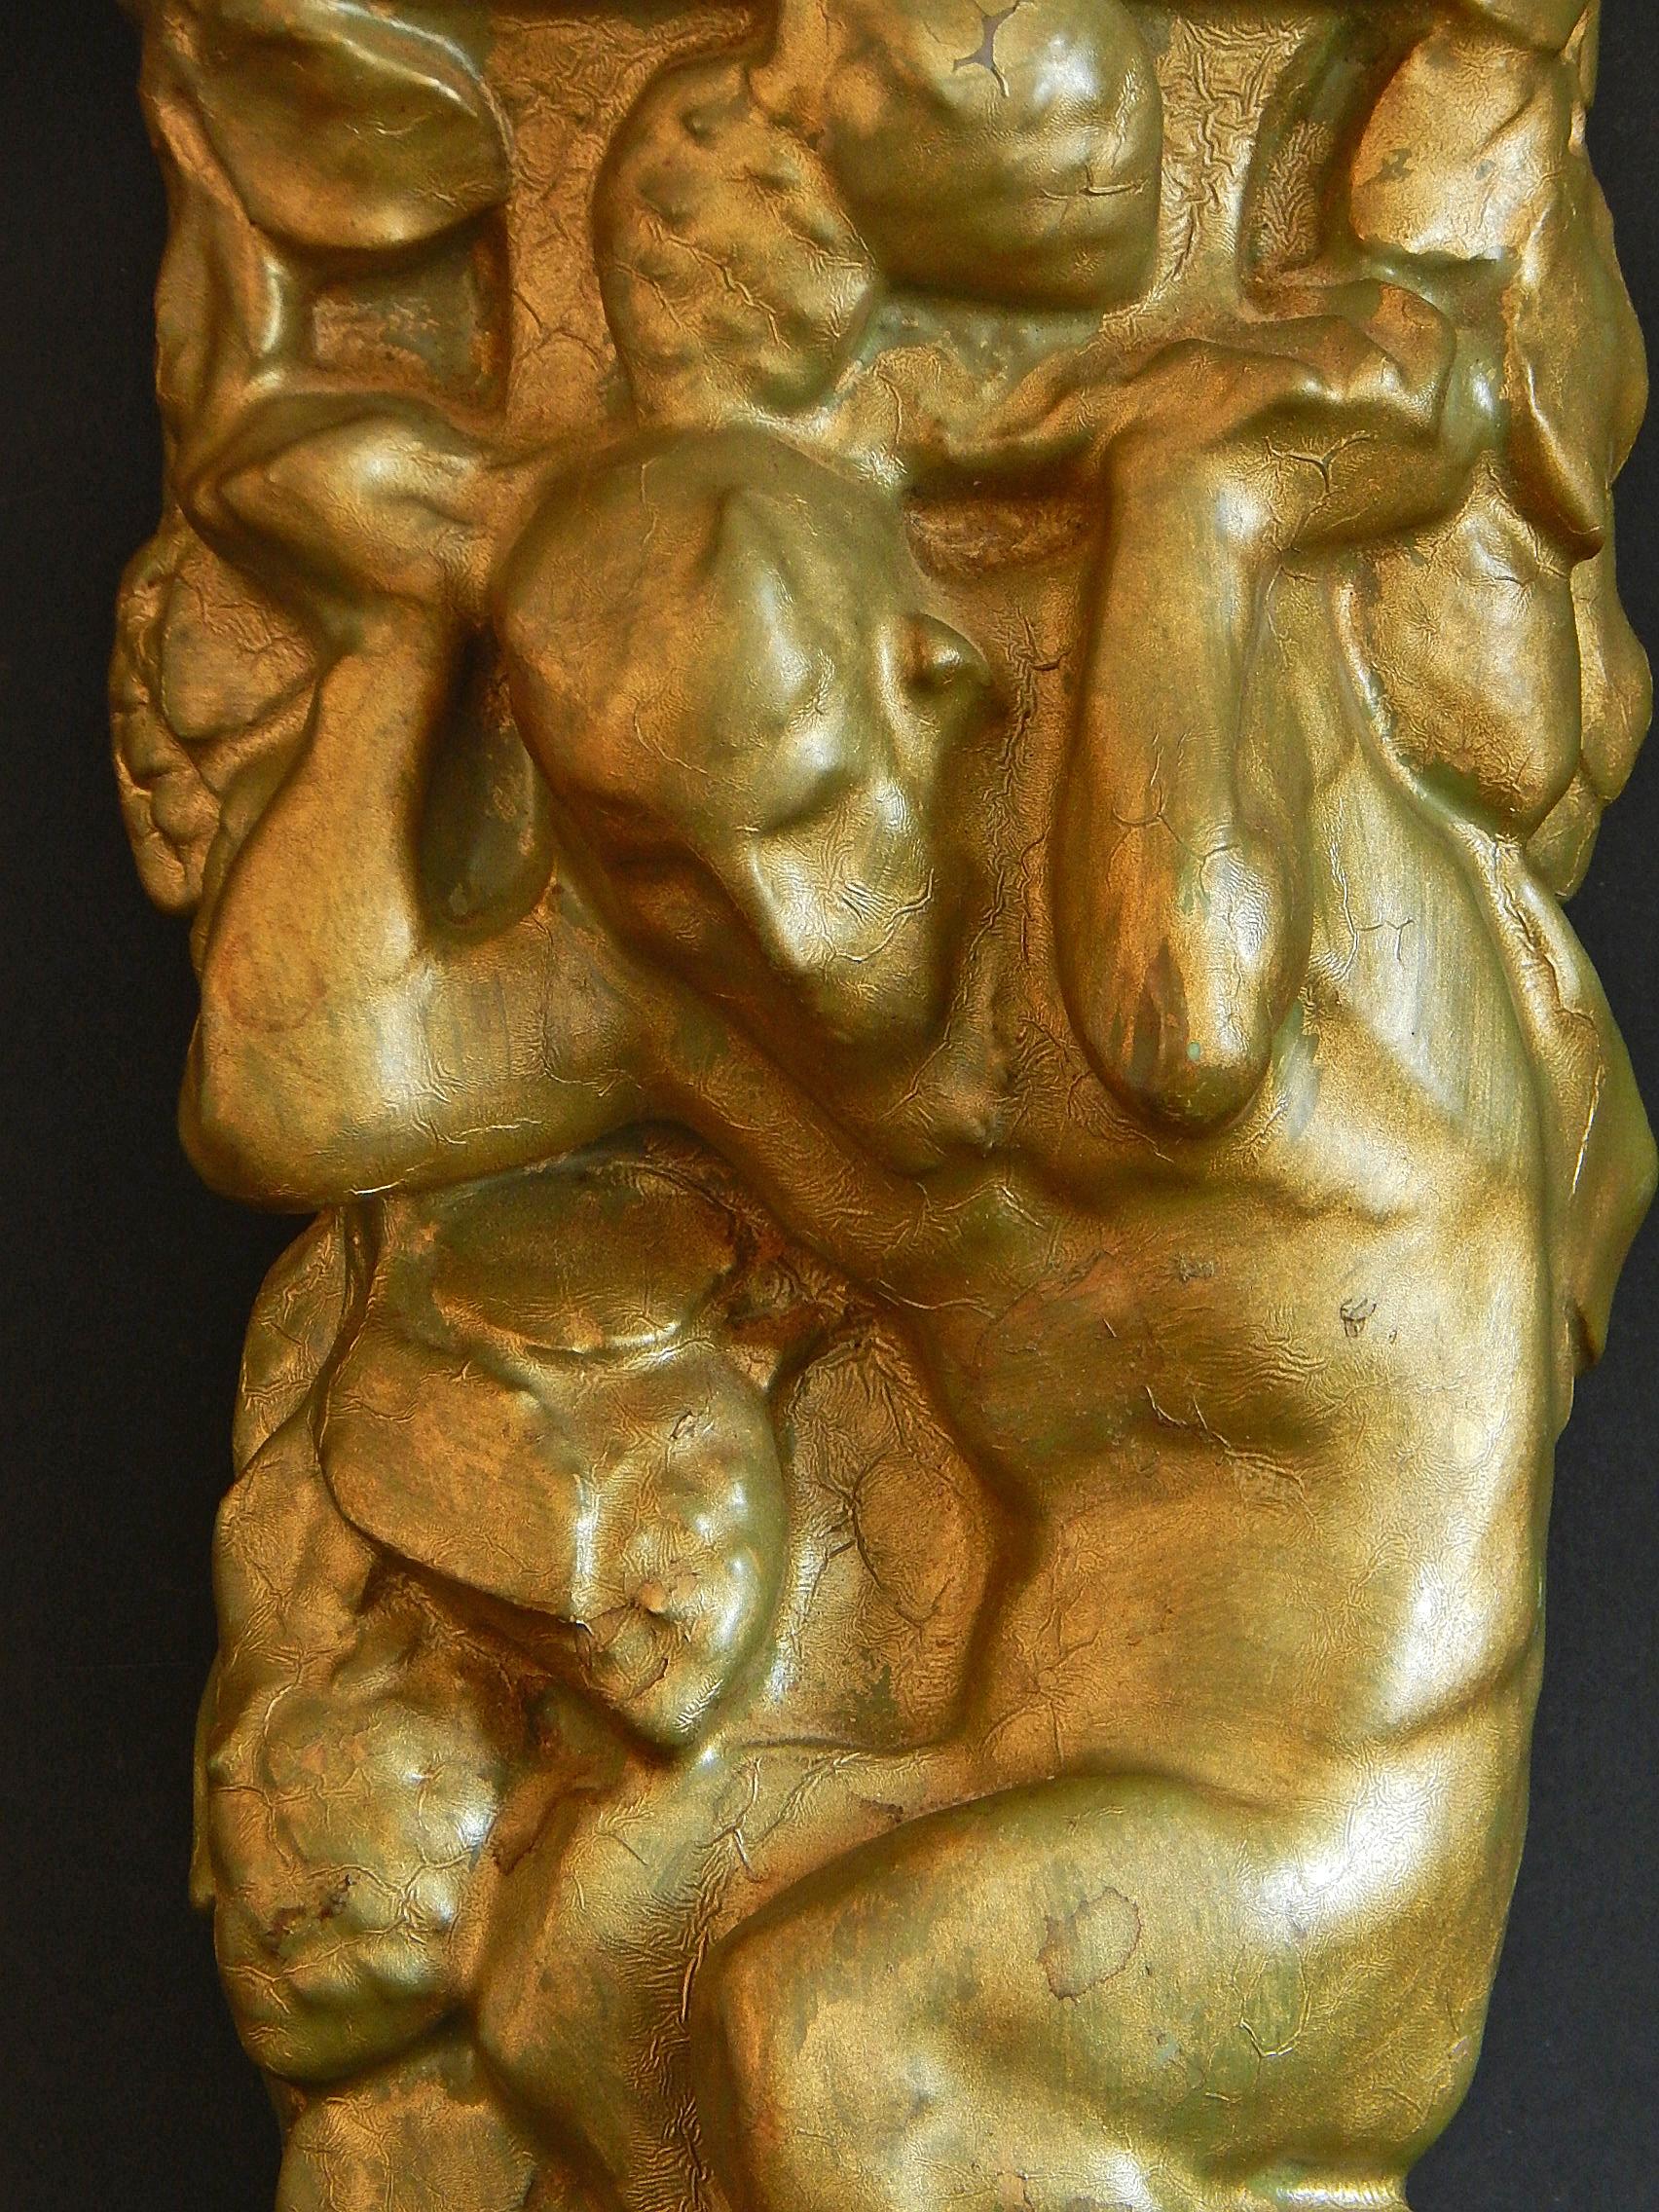 Diese Skulptur eines Satyrs, der einen Korb mit Weintrauben trägt, ist eines der seltensten und ungewöhnlichsten Stücke, die jemals von der berühmten Rookwood Pottery Company in Cincinnati geschaffen wurden. Sie entstand 1915. Die Skulptur ist